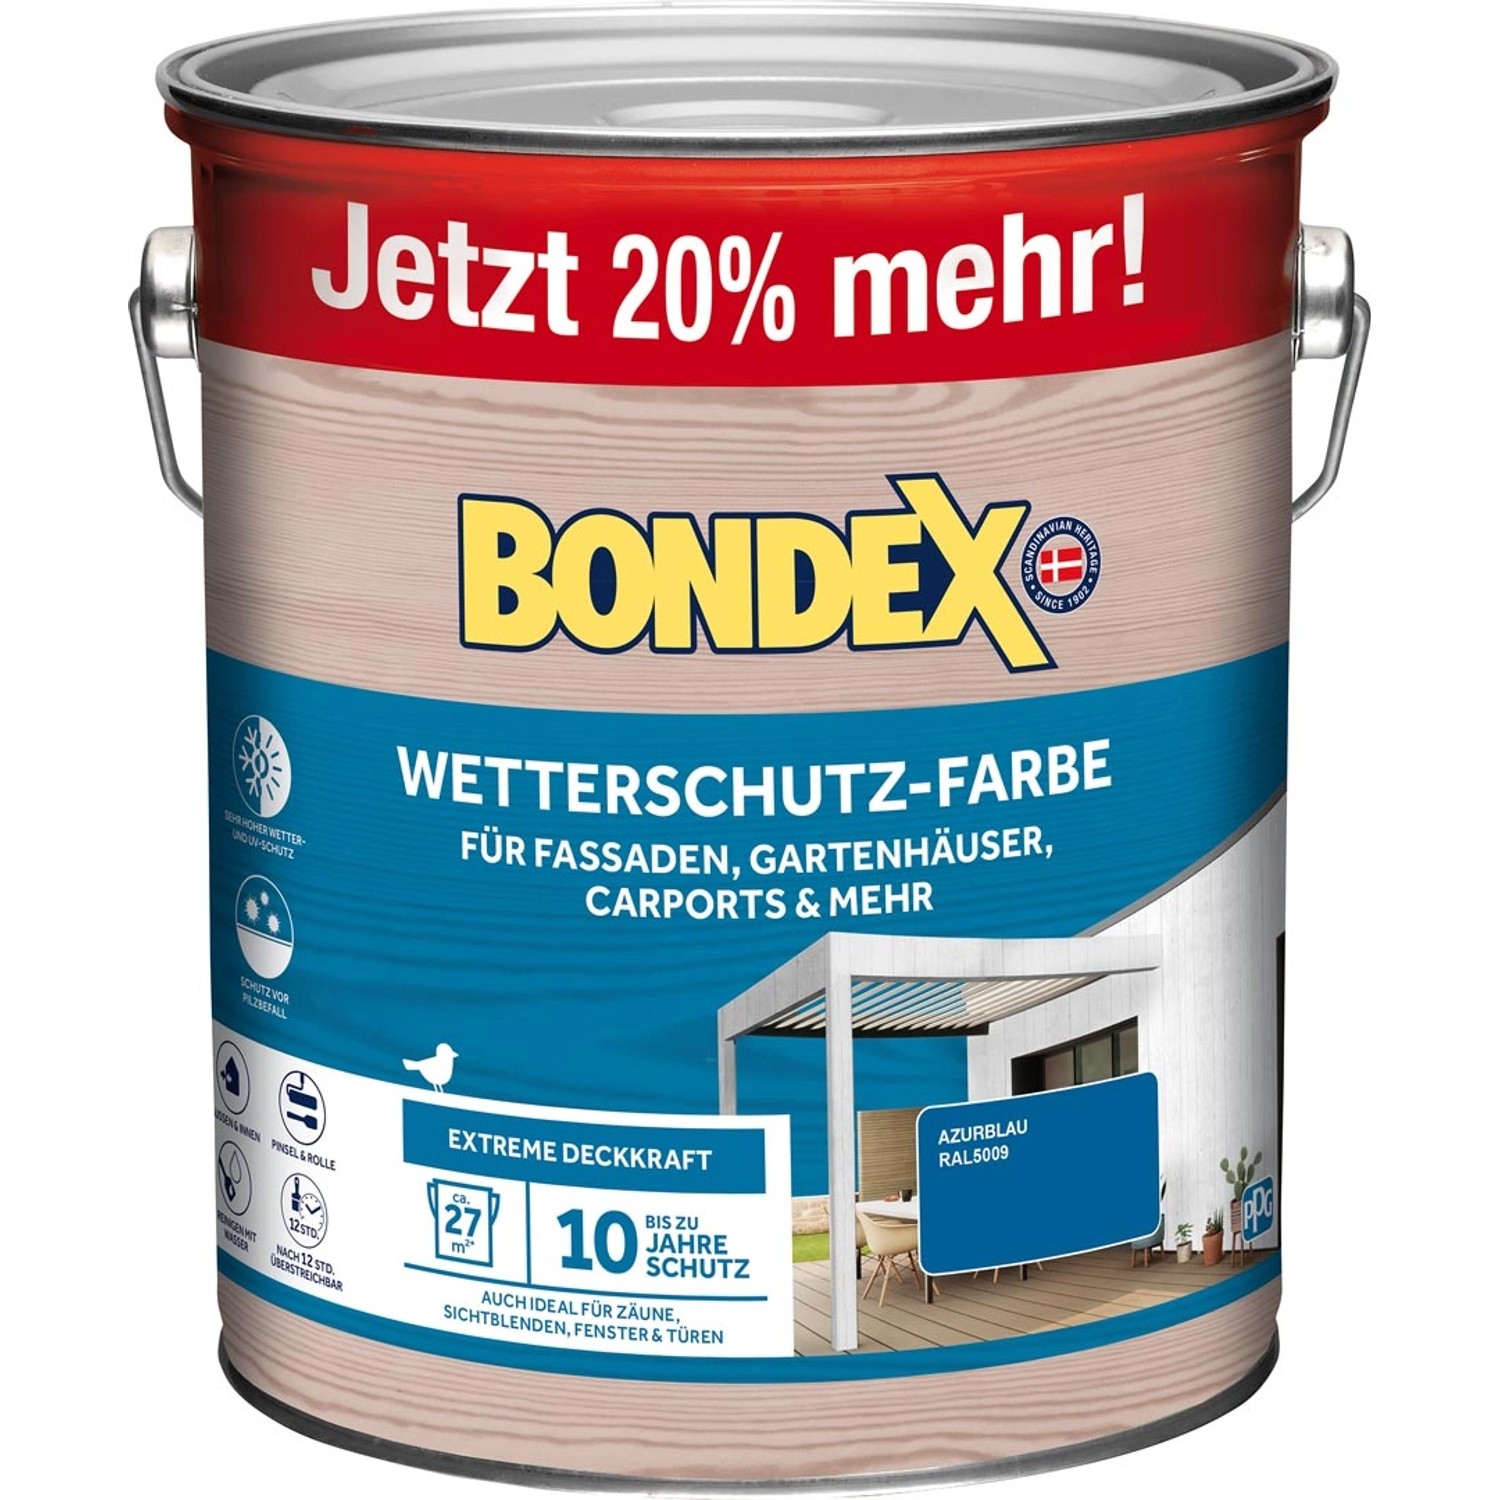 Bondex Wetterschutz-Farbe RAL 5009 Azurblau - 3 l ausreichend für ca. 27 m²